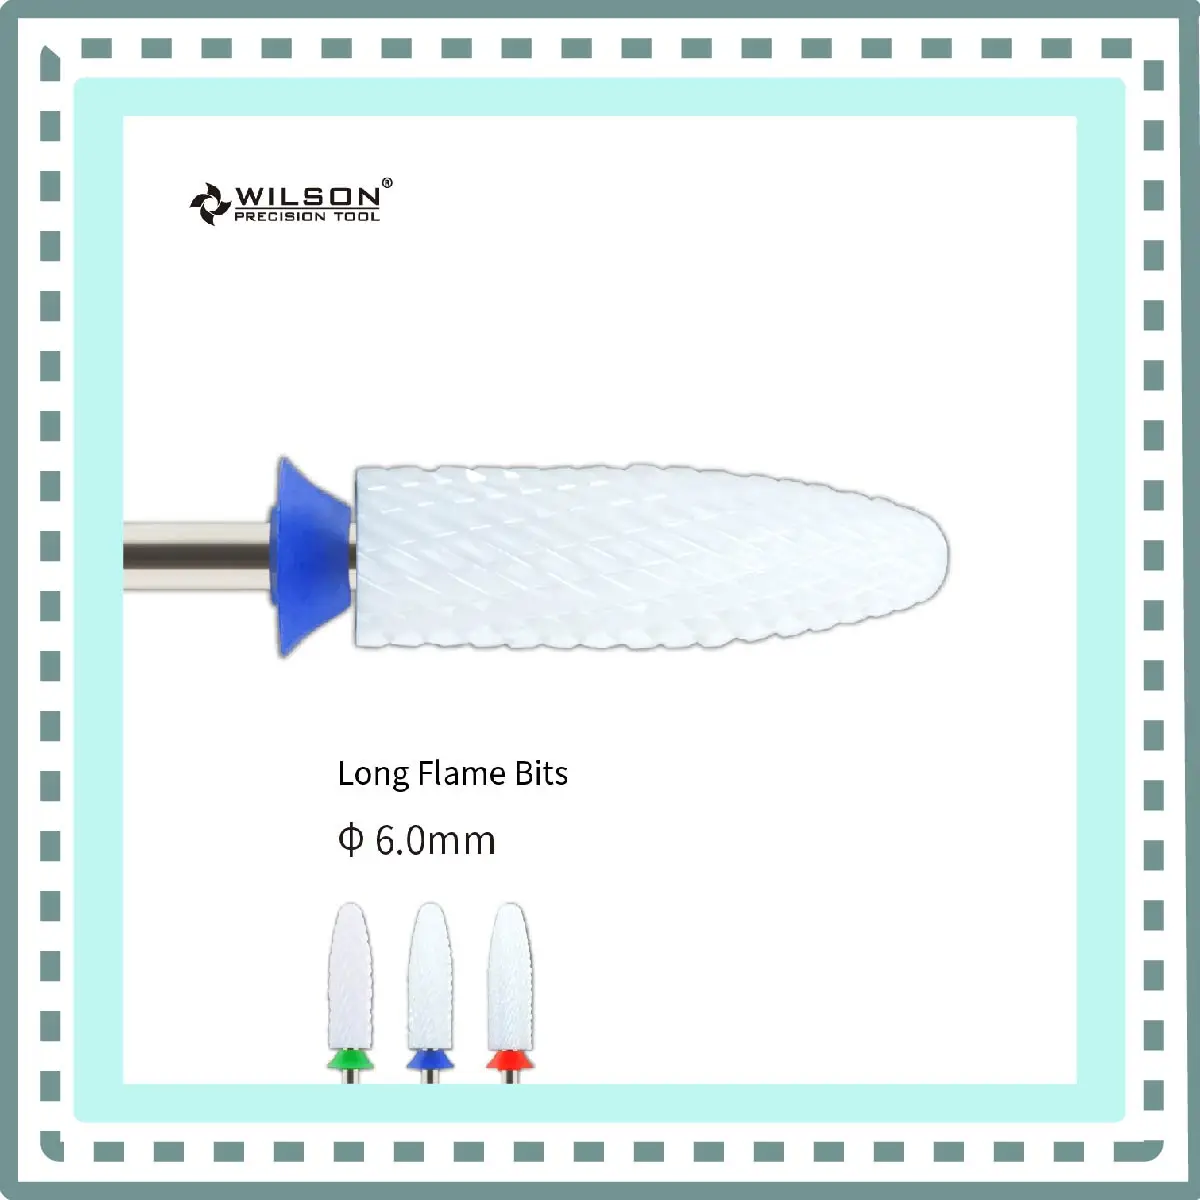 

WILSON Long Flame Bits Ceramic-Tools/Nails/Uñas Accesorios Y Herramientas/Nail Accessories